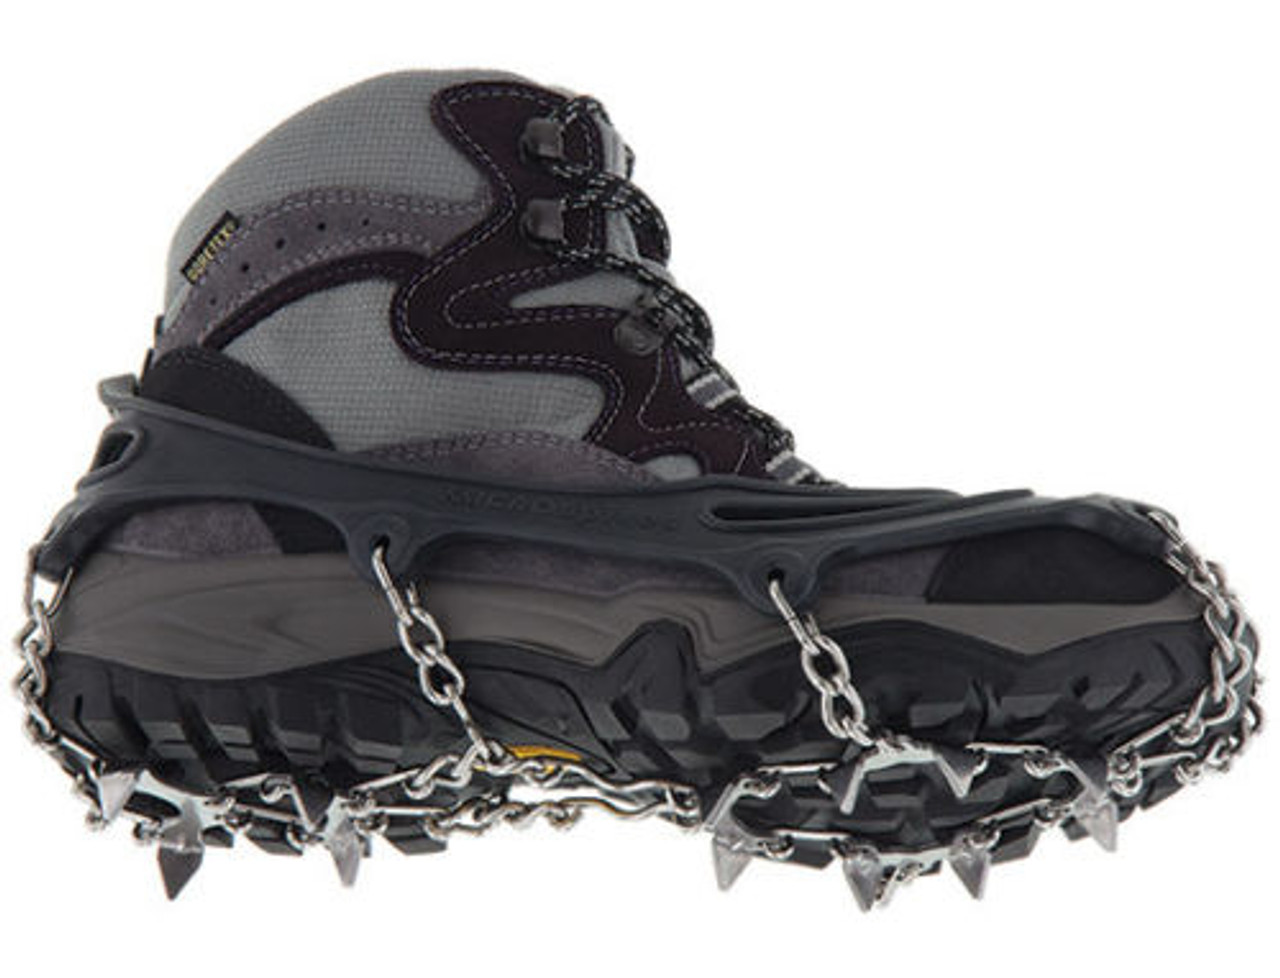 Kahtoola Unisex Microspikes Footwear Traction Gaiters, Black, M